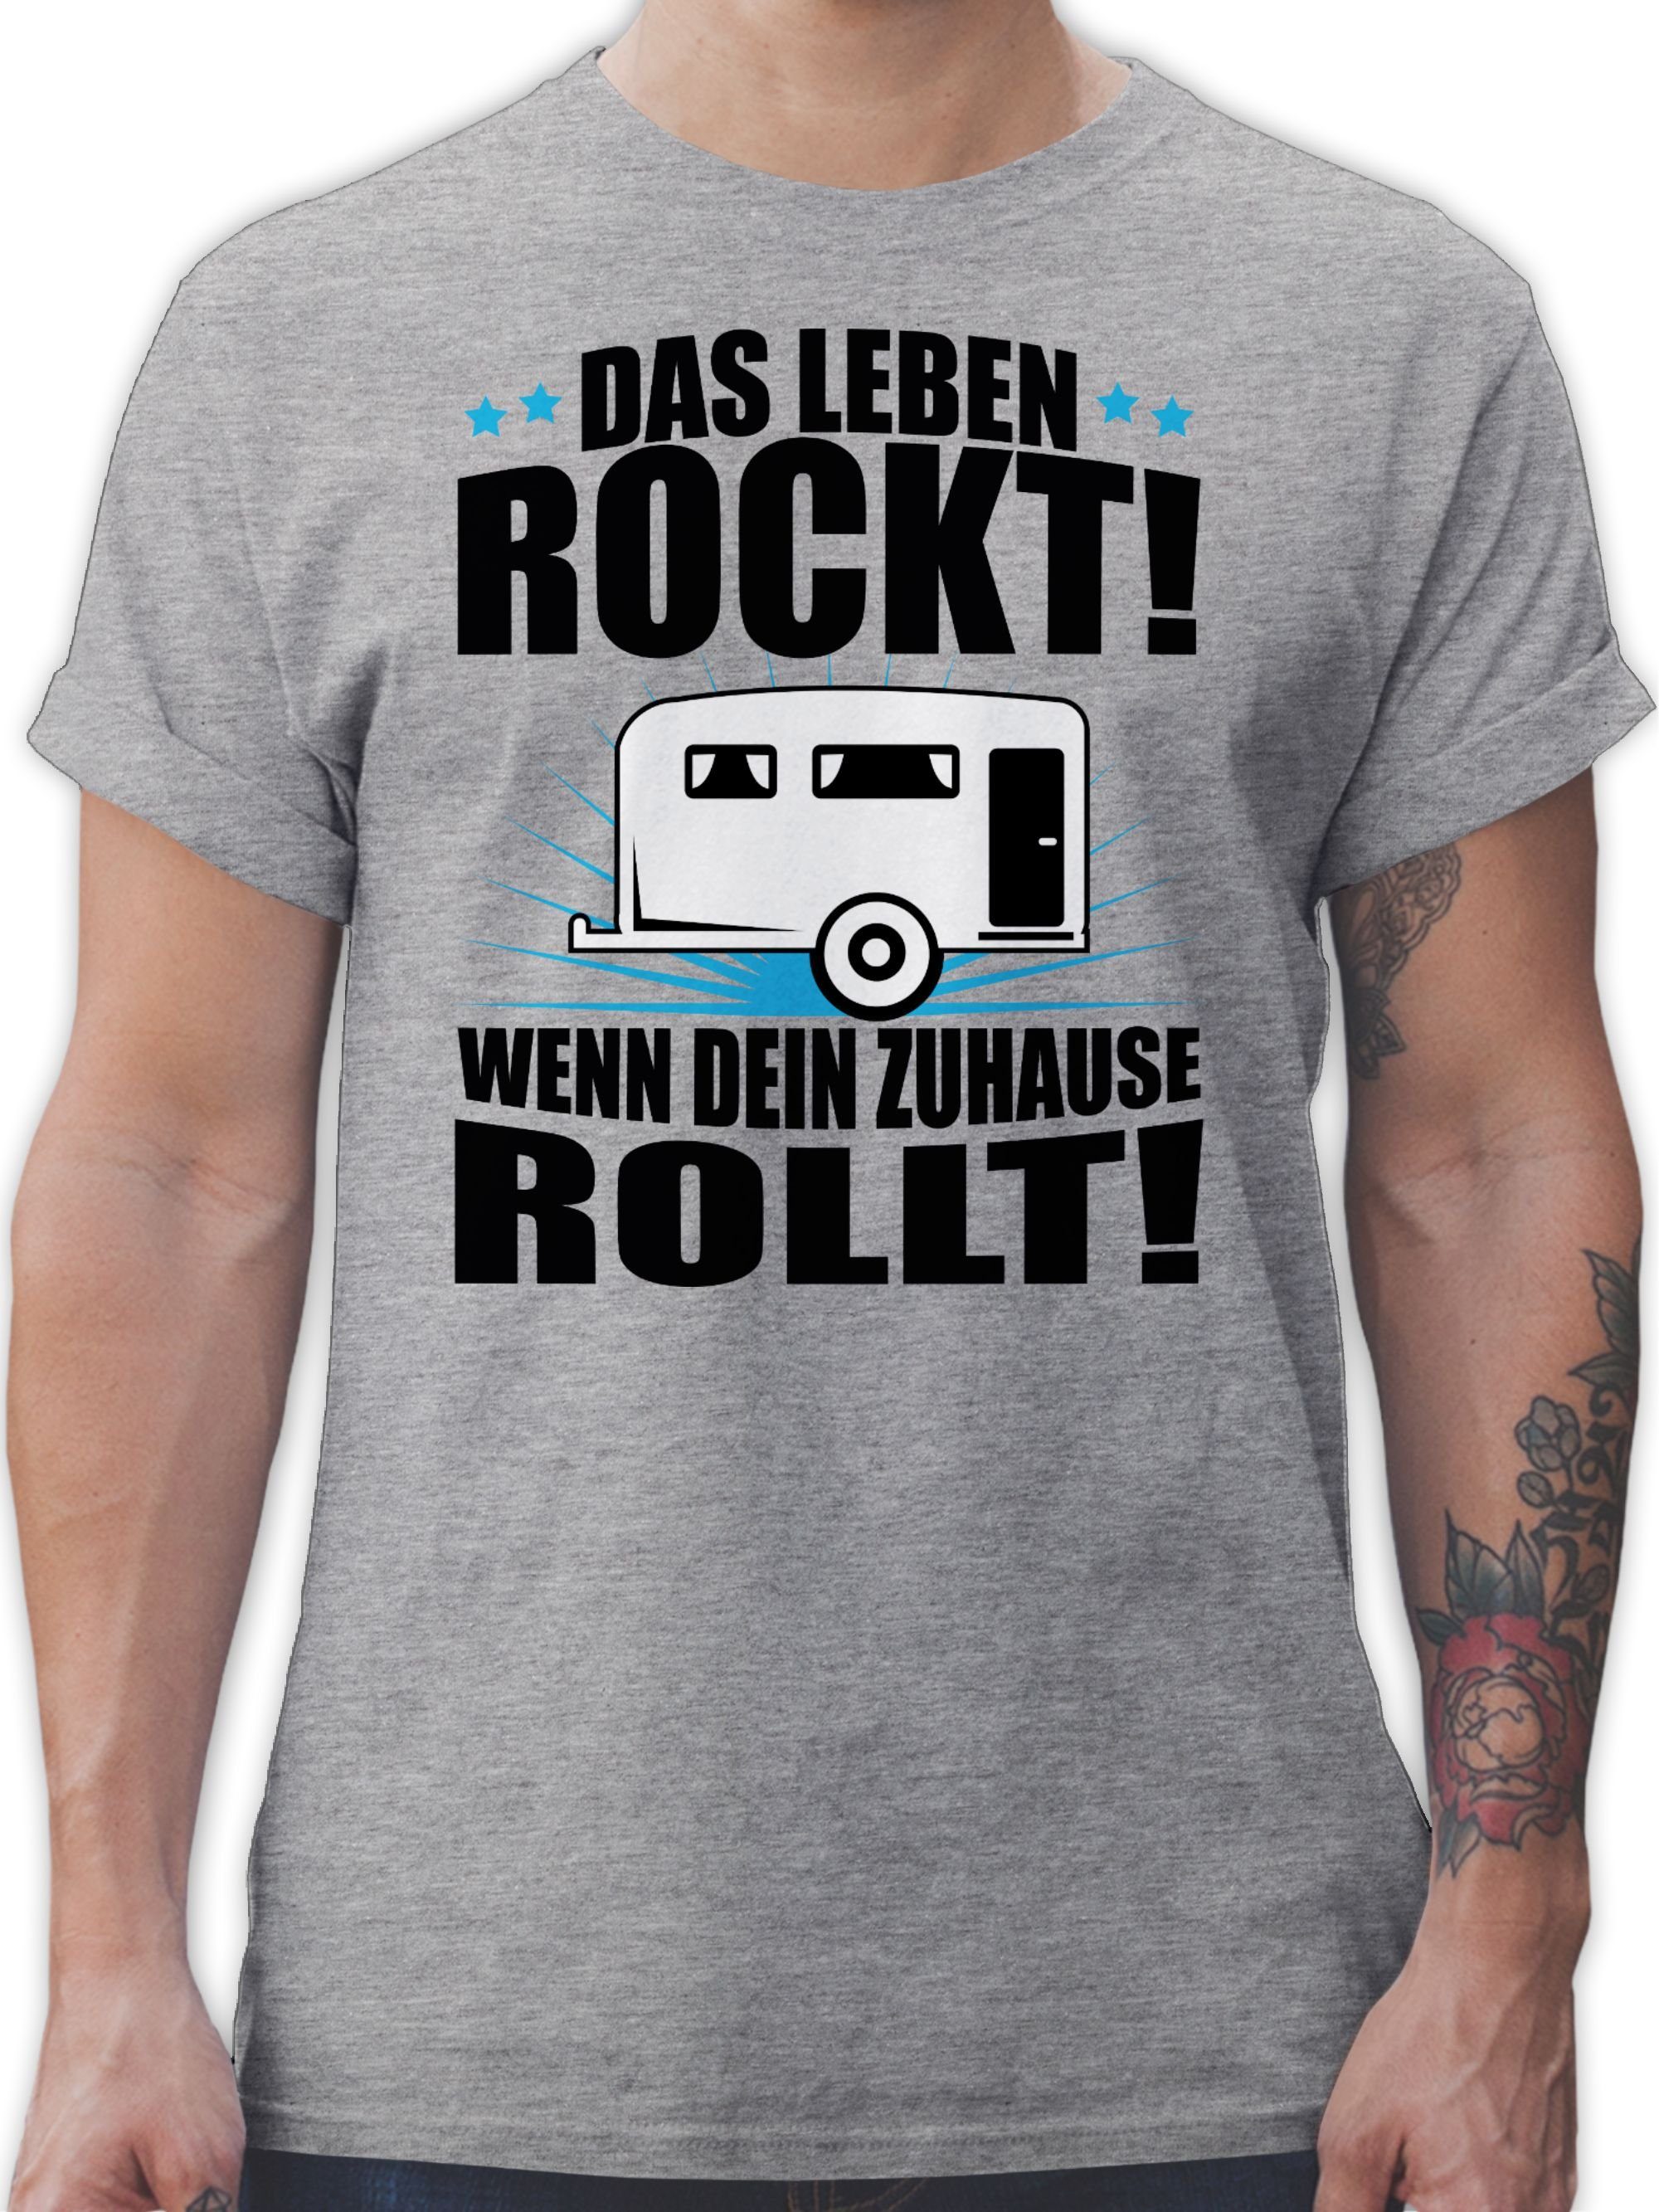 Shirtracer T-Shirt Das Leben rockt! Wohnwagen schwarz Hobby Outfit 2 Grau meliert